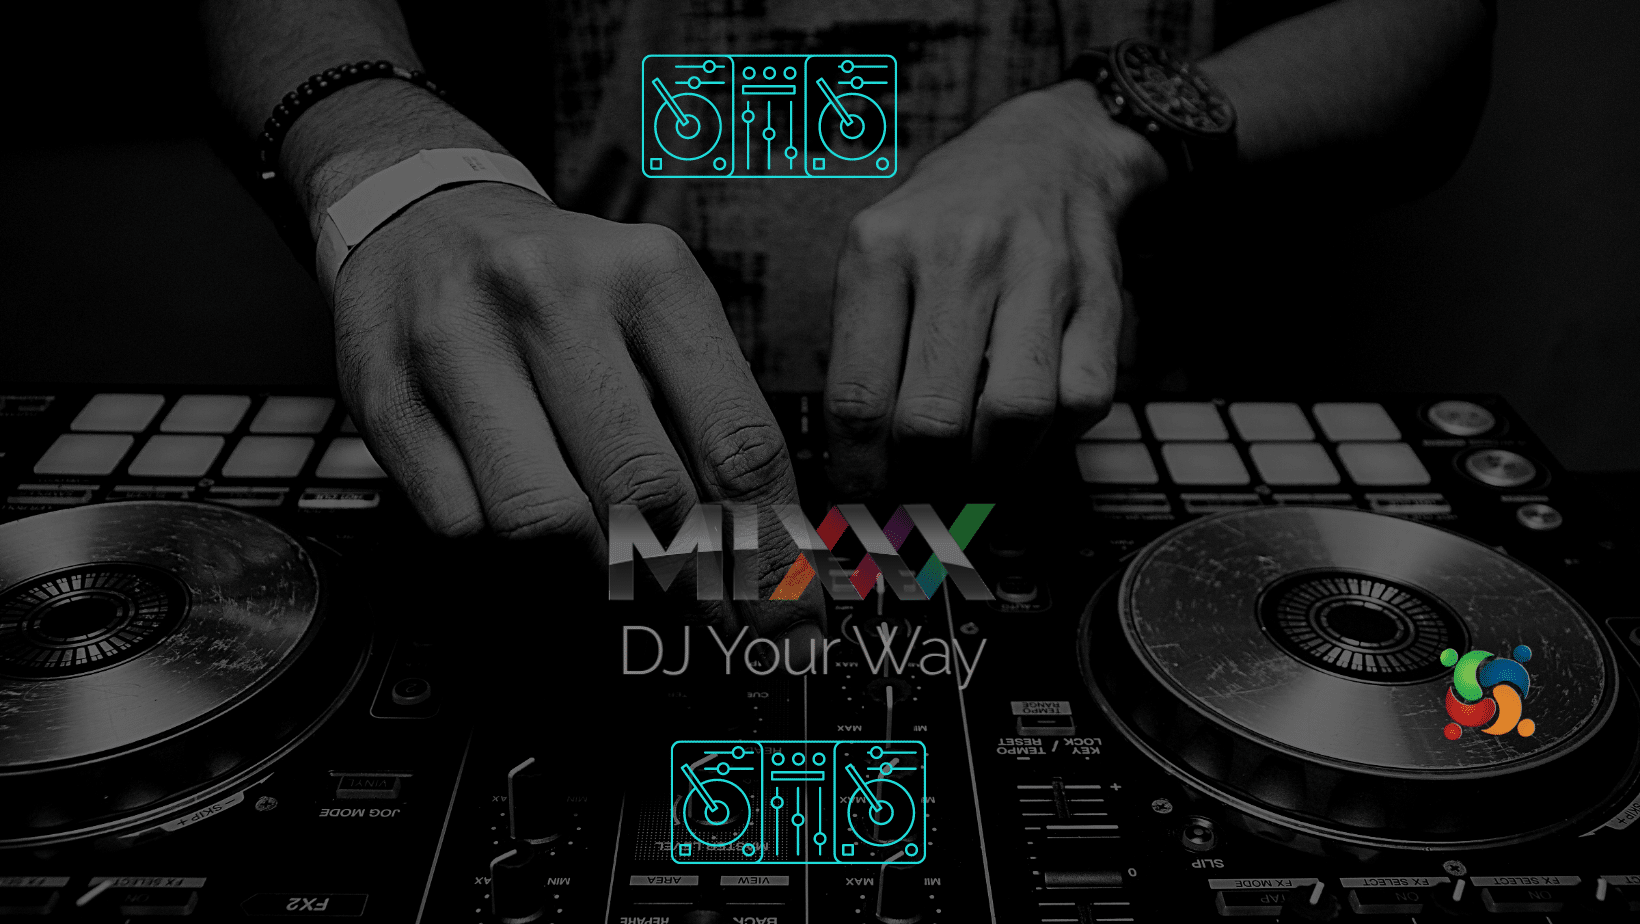 Software Mixxx 2.3.2 adiciona mapeamento para o controlador de DJ Pioneer DDJ-SB3